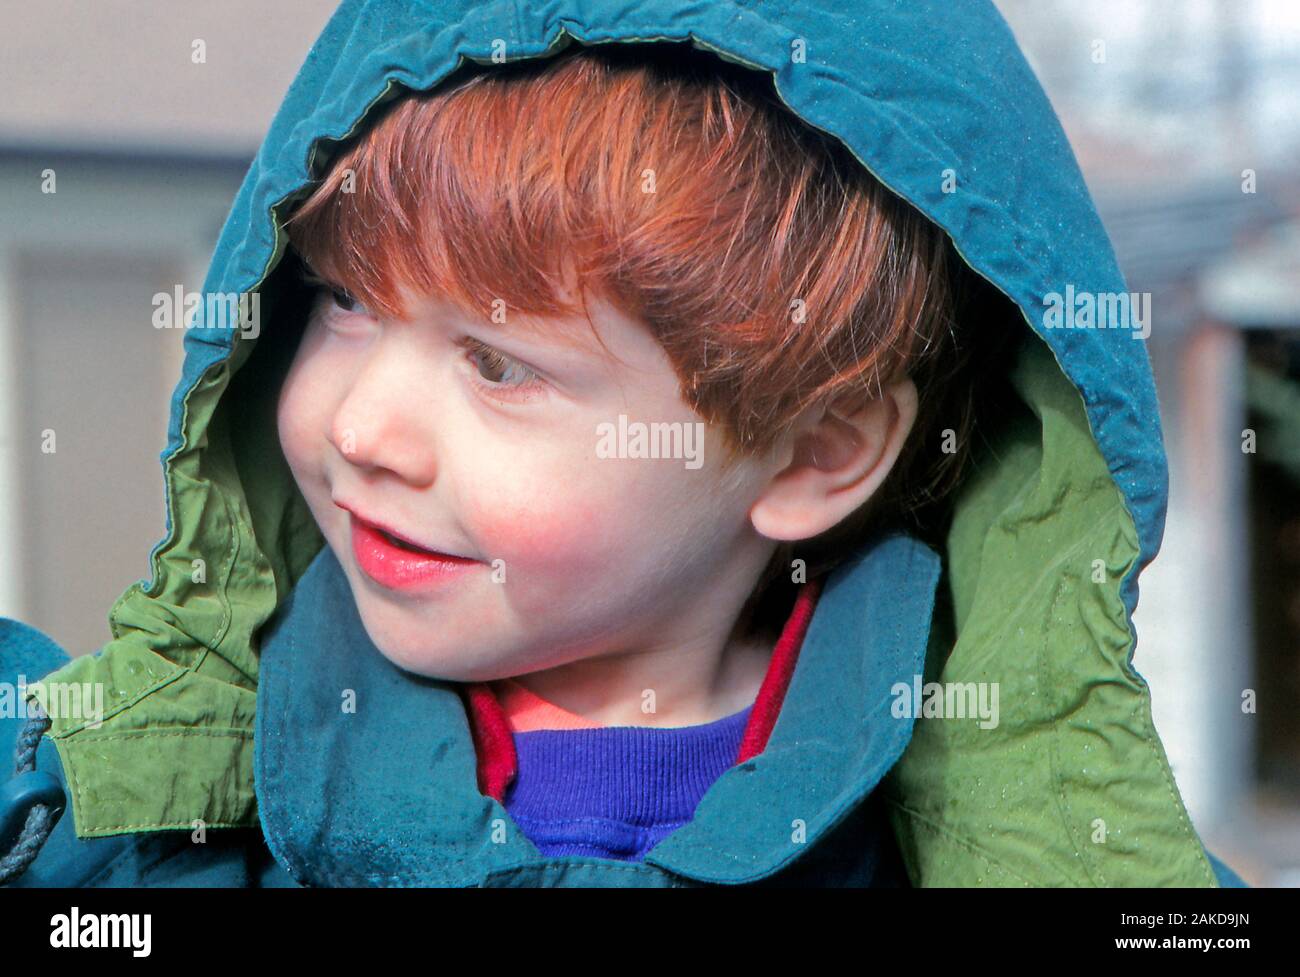 Junge rothaarige Junge in einer Regenjacke während ein leichter Regen oder Nieselregen wetter Veranstaltung lächeln Stockfoto